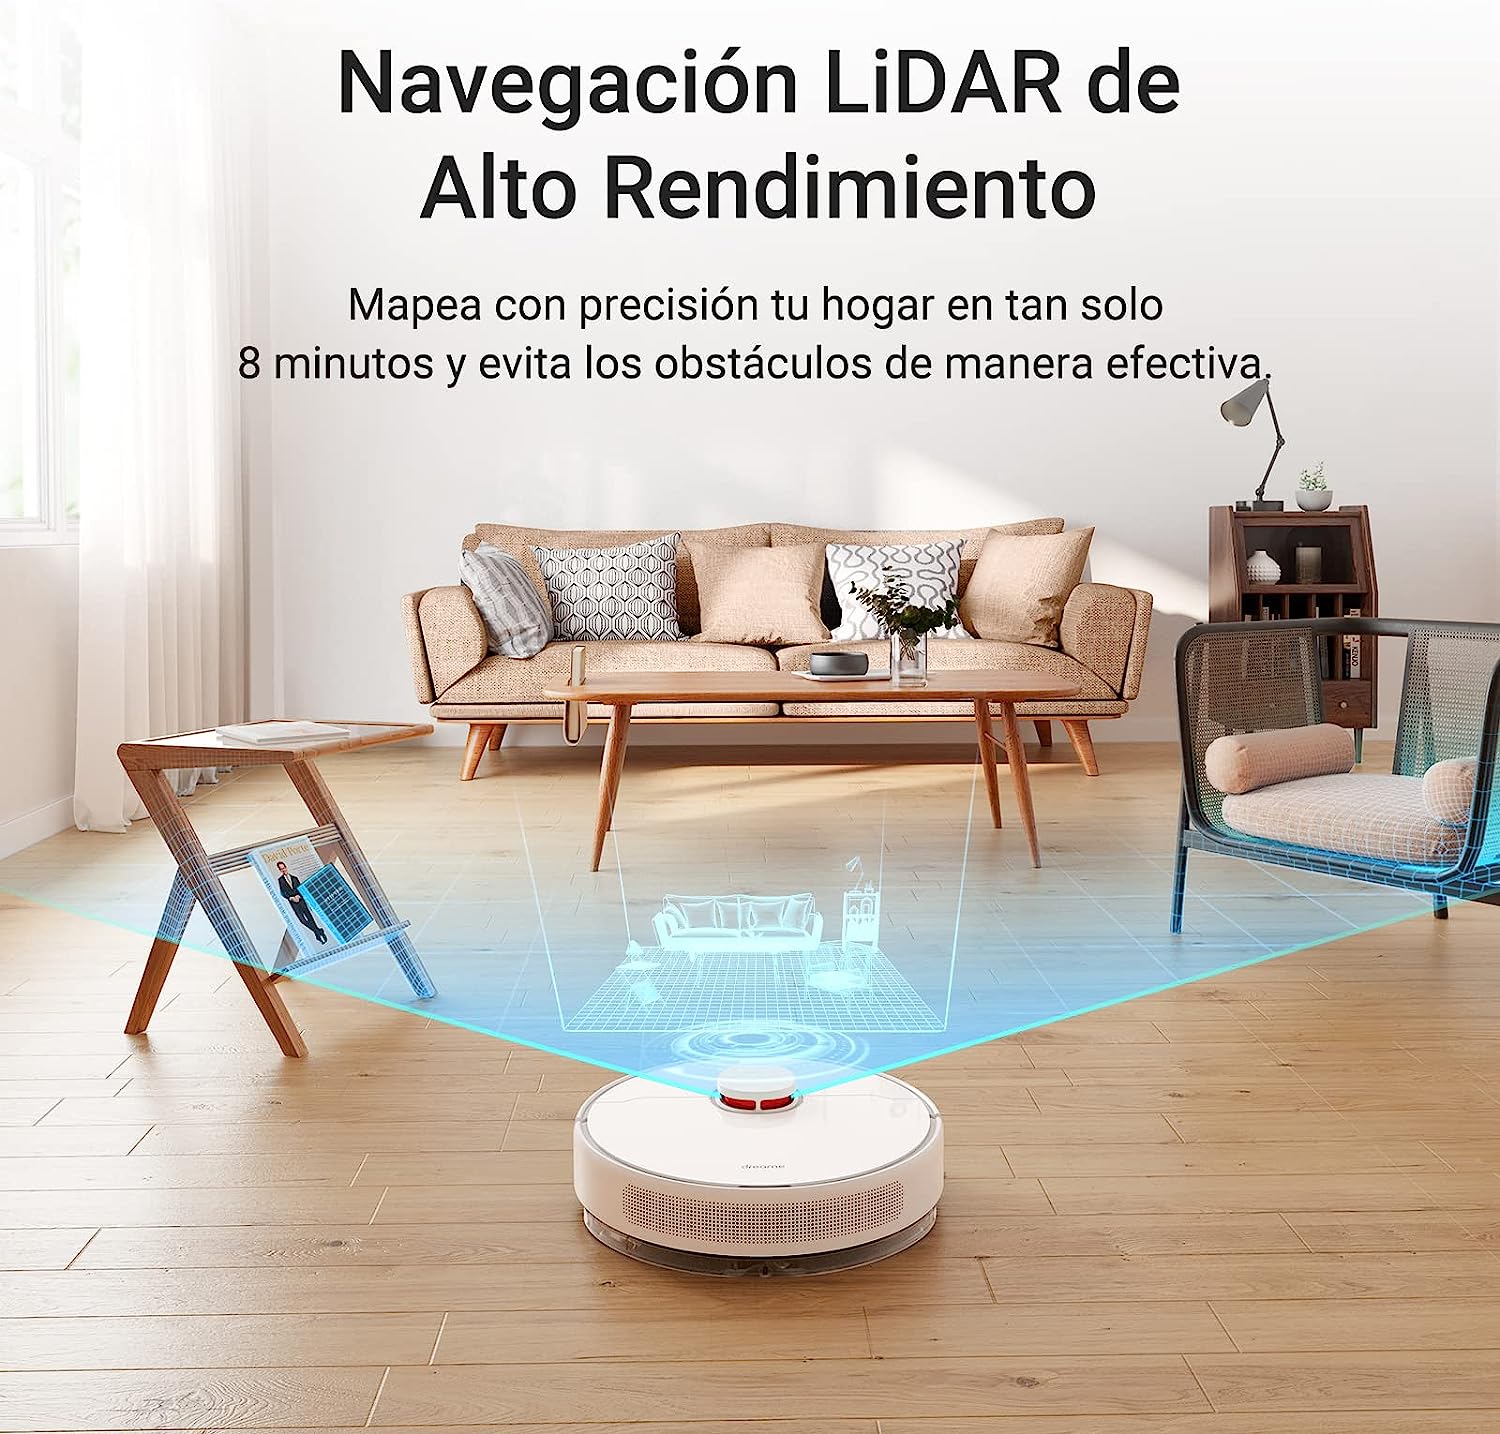 Alquila Dreame D10 plus Robot Aspirador y Fregona con Estación de Succión  desde 22,90 € al mes